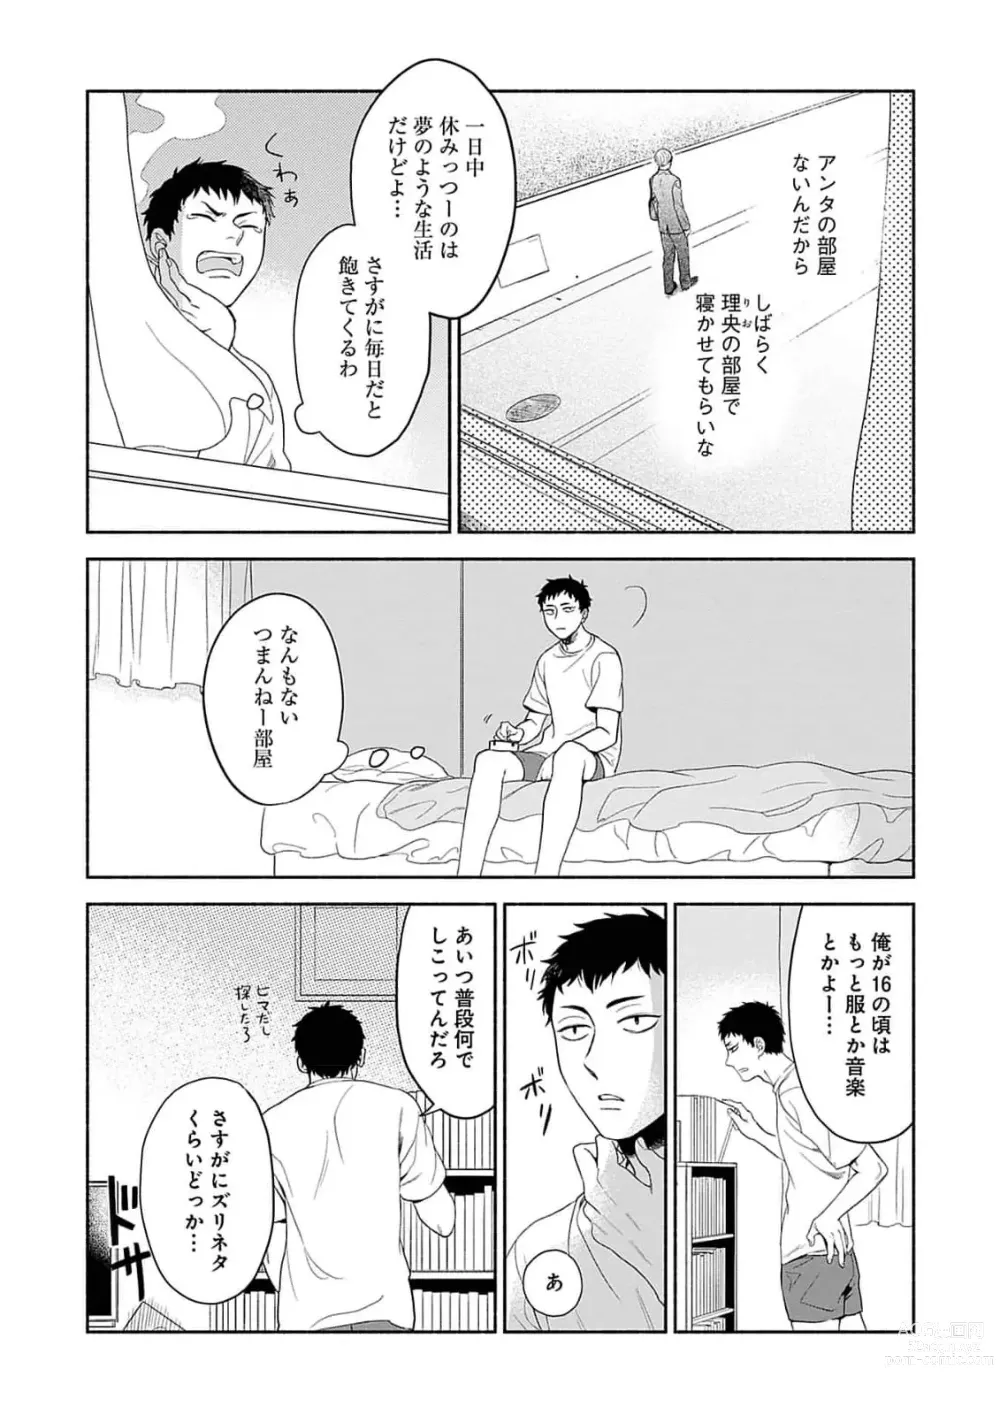 Page 7 of manga Yoru no Kyoudai